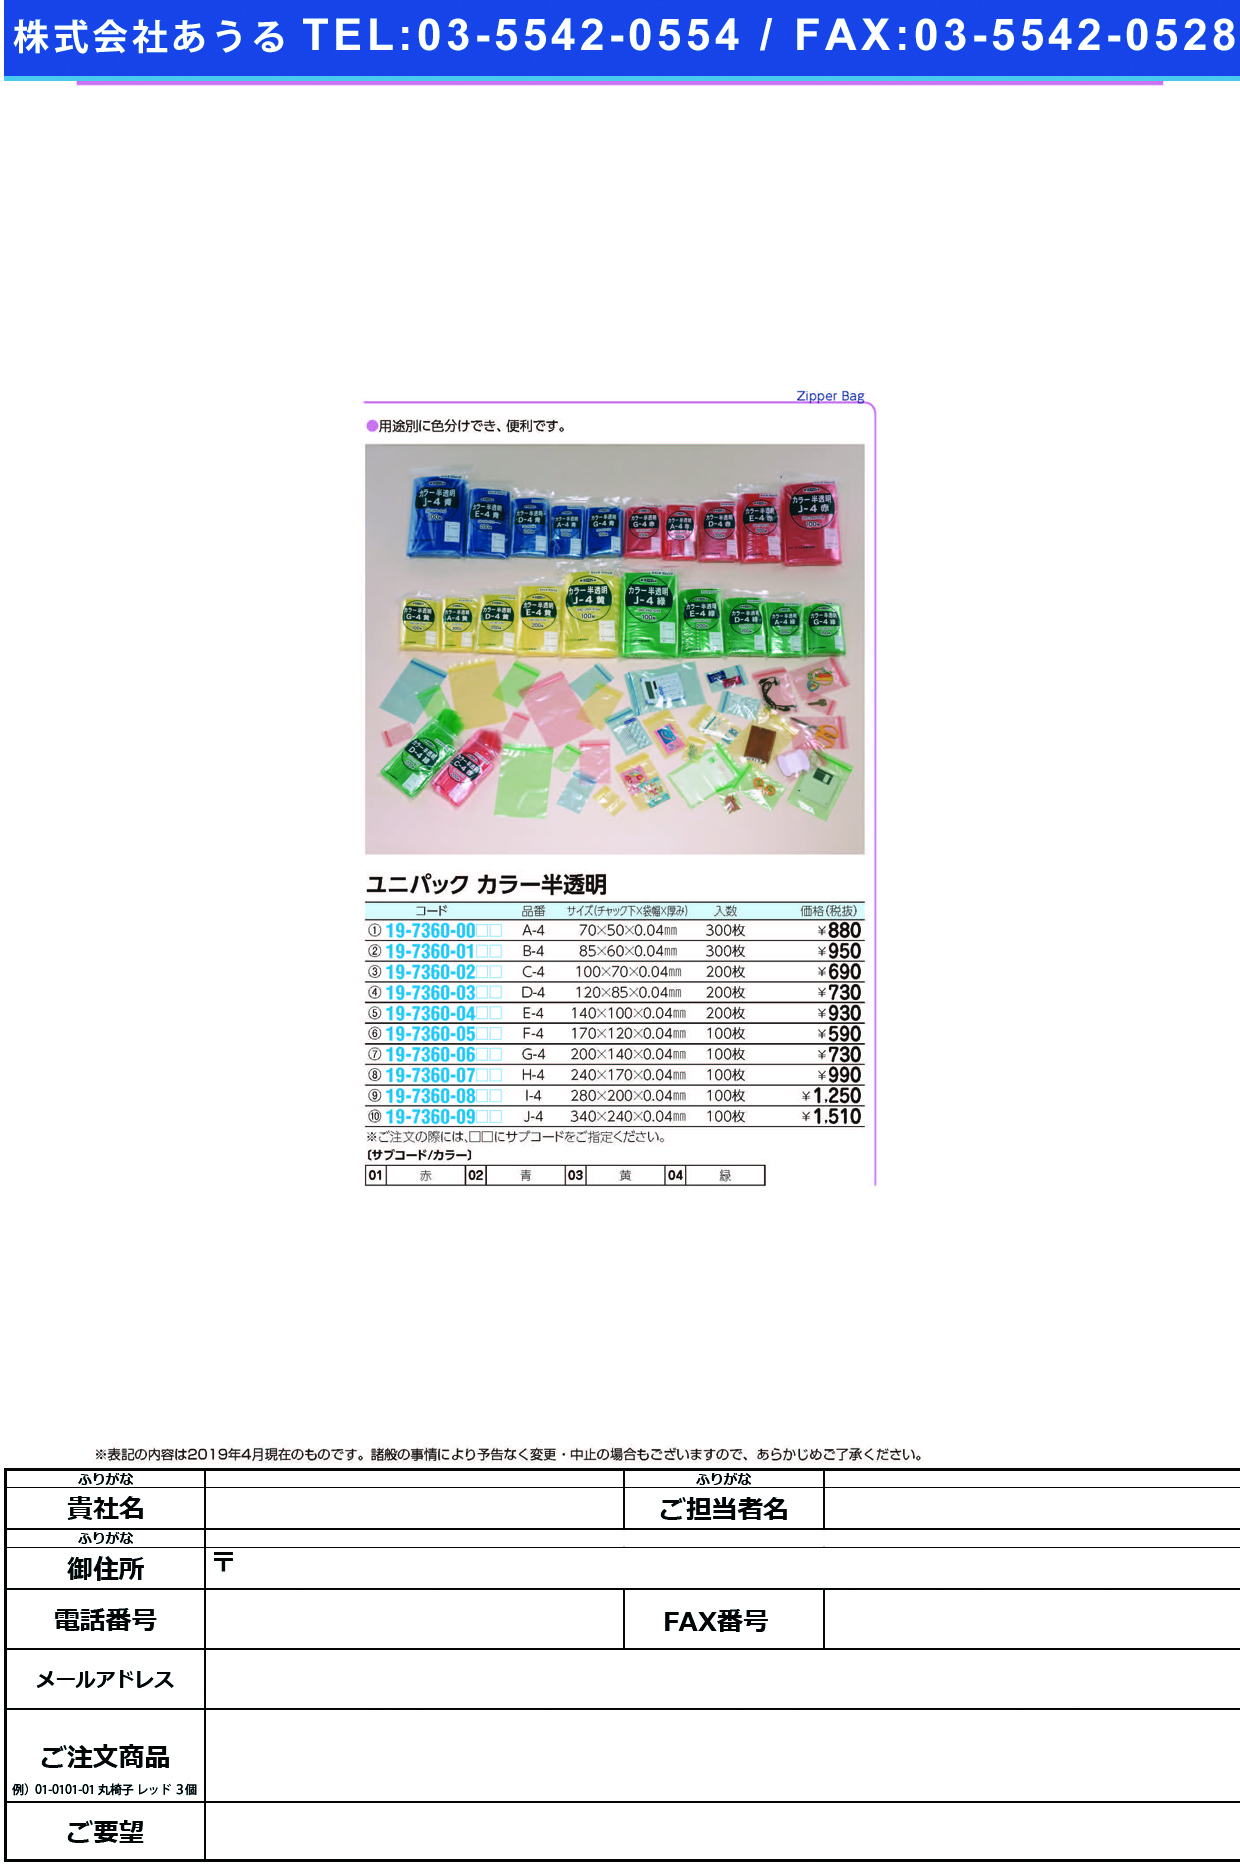 (19-7360-01)ユニパックカラー半透明 B-4(300ﾏｲｲﾘ) ﾕﾆﾊﾟｯｸｶﾗｰﾊﾝﾄｳﾒｲ 赤【1袋単位】【2019年カタログ商品】